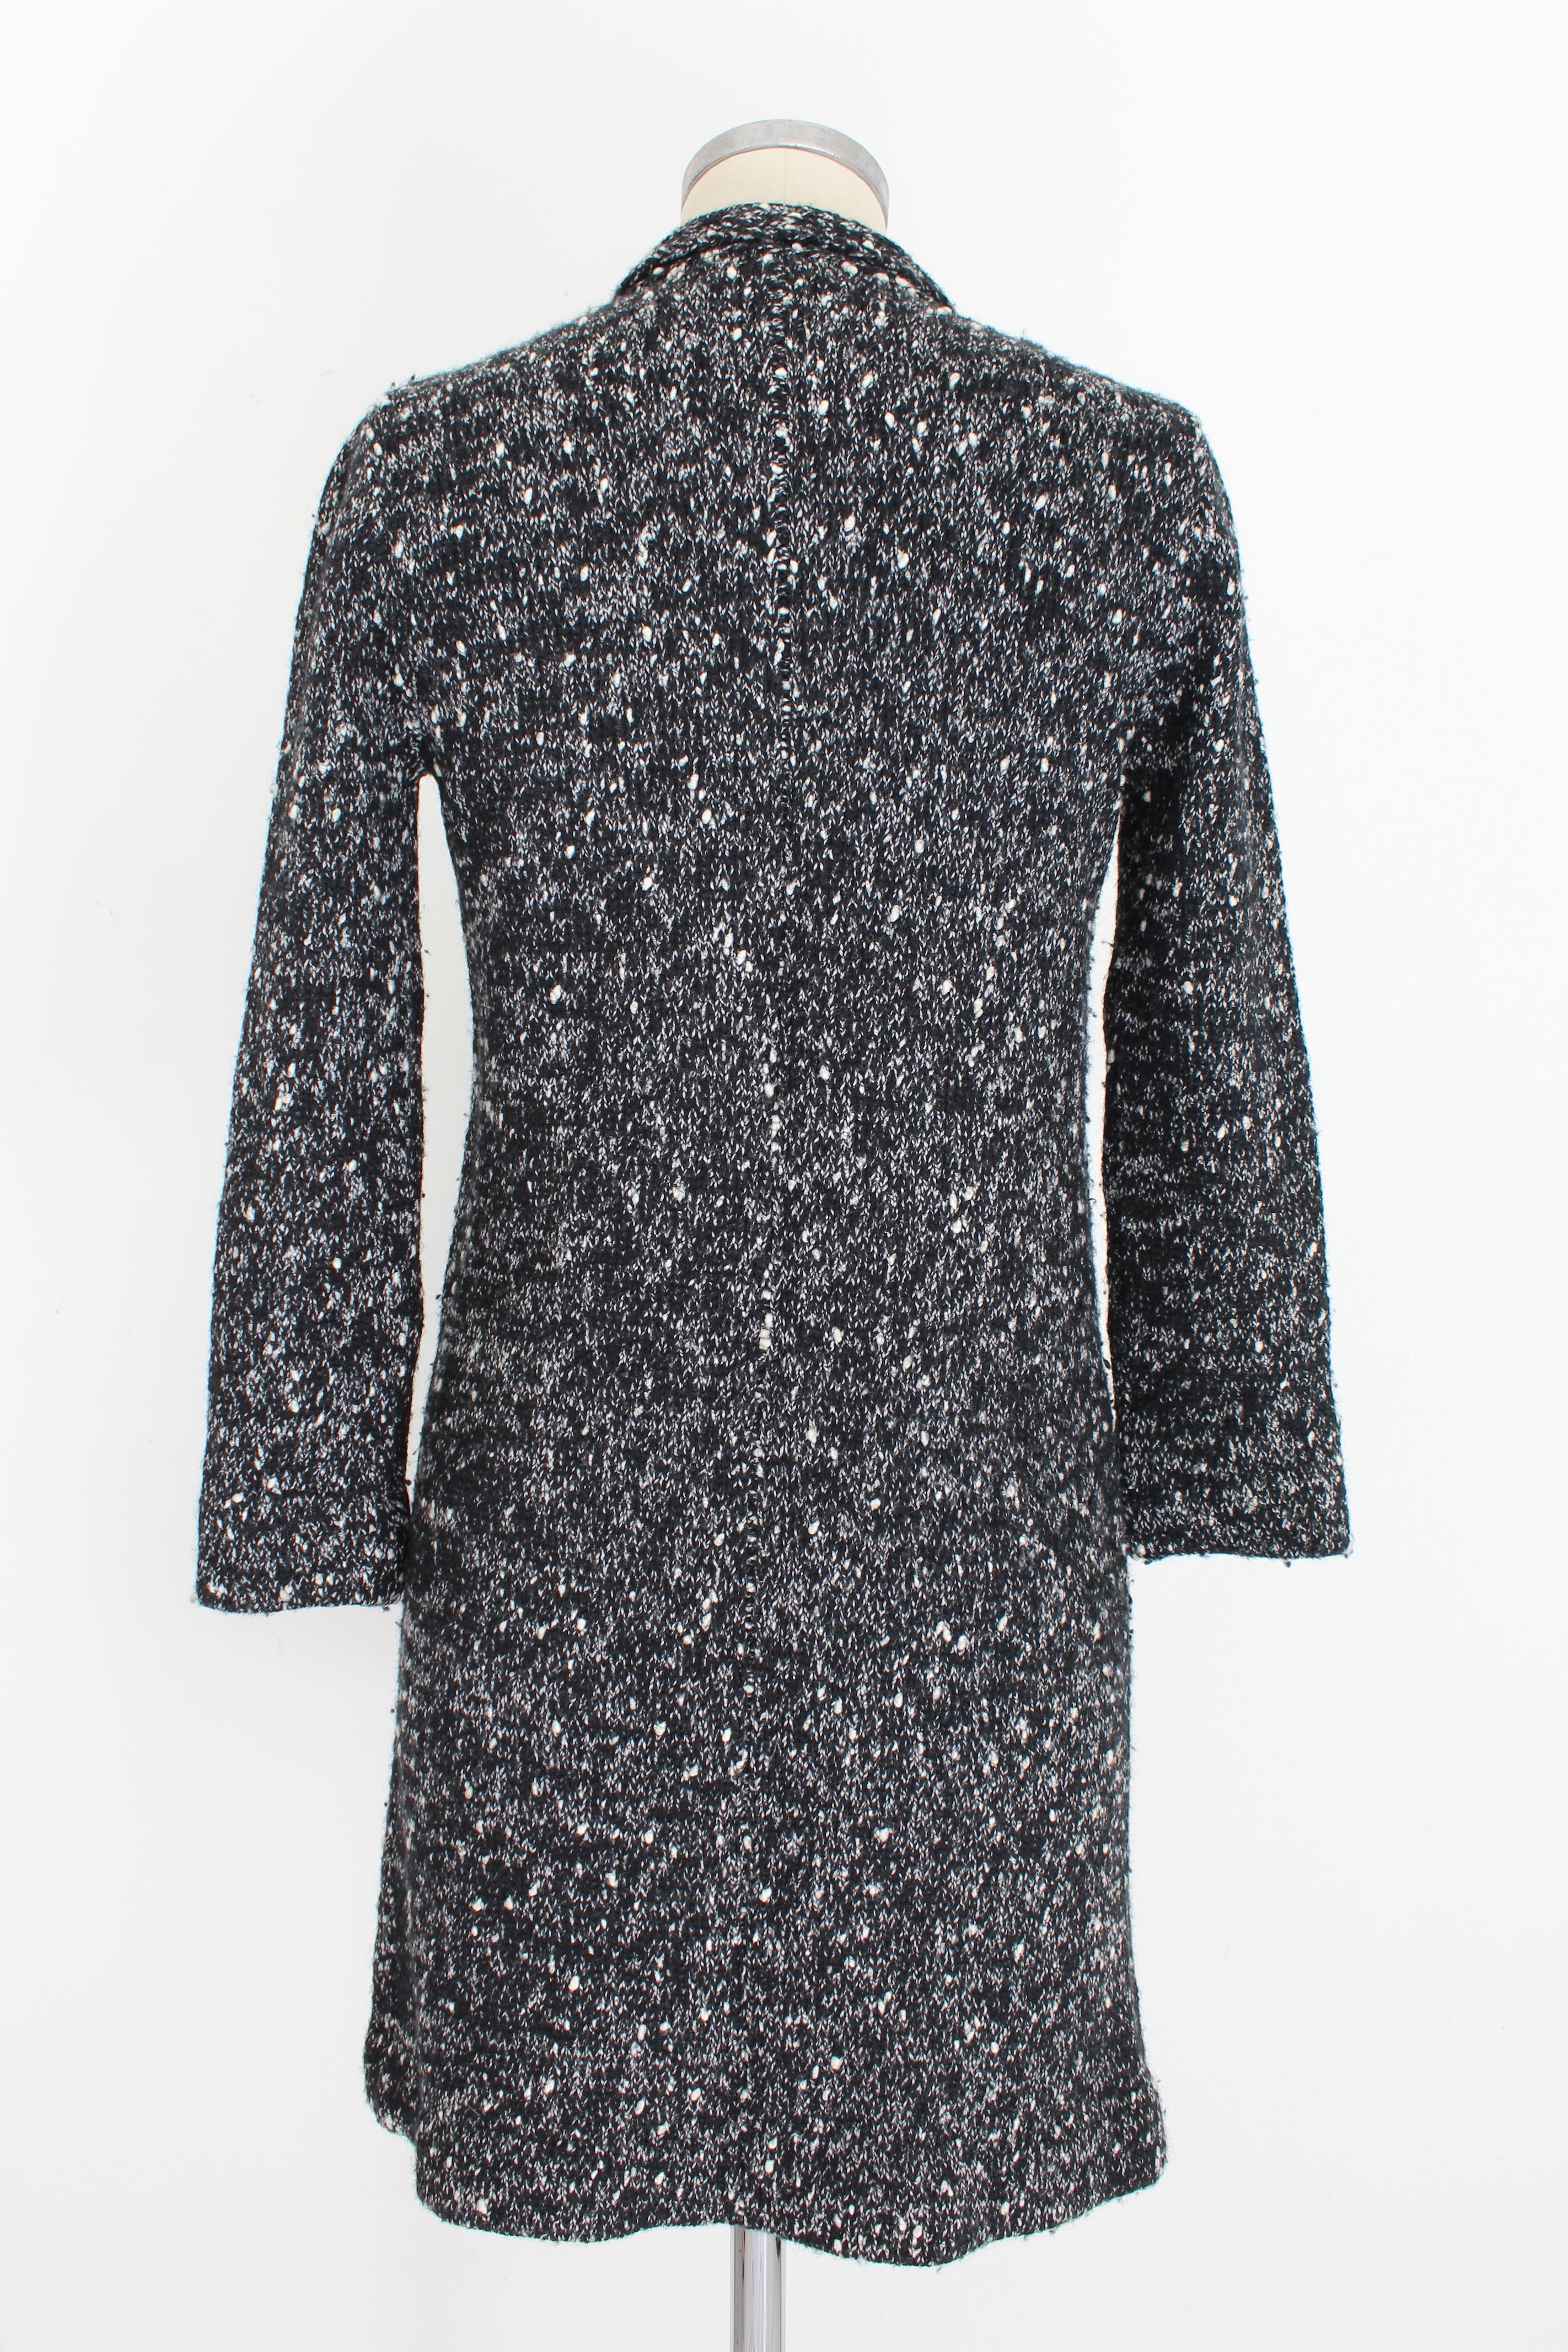 Krizia 80er Jahre Vintage Pullover für Frauen. Lange Jacke, Knopfverschluss und Seitentaschen. Schwarze und weiße Farbe, Wollstoff. Hergestellt in Italien.

Zustand: Sehr gut

Artikel in ausgezeichnetem Zustand. Das Trikot weist leichte